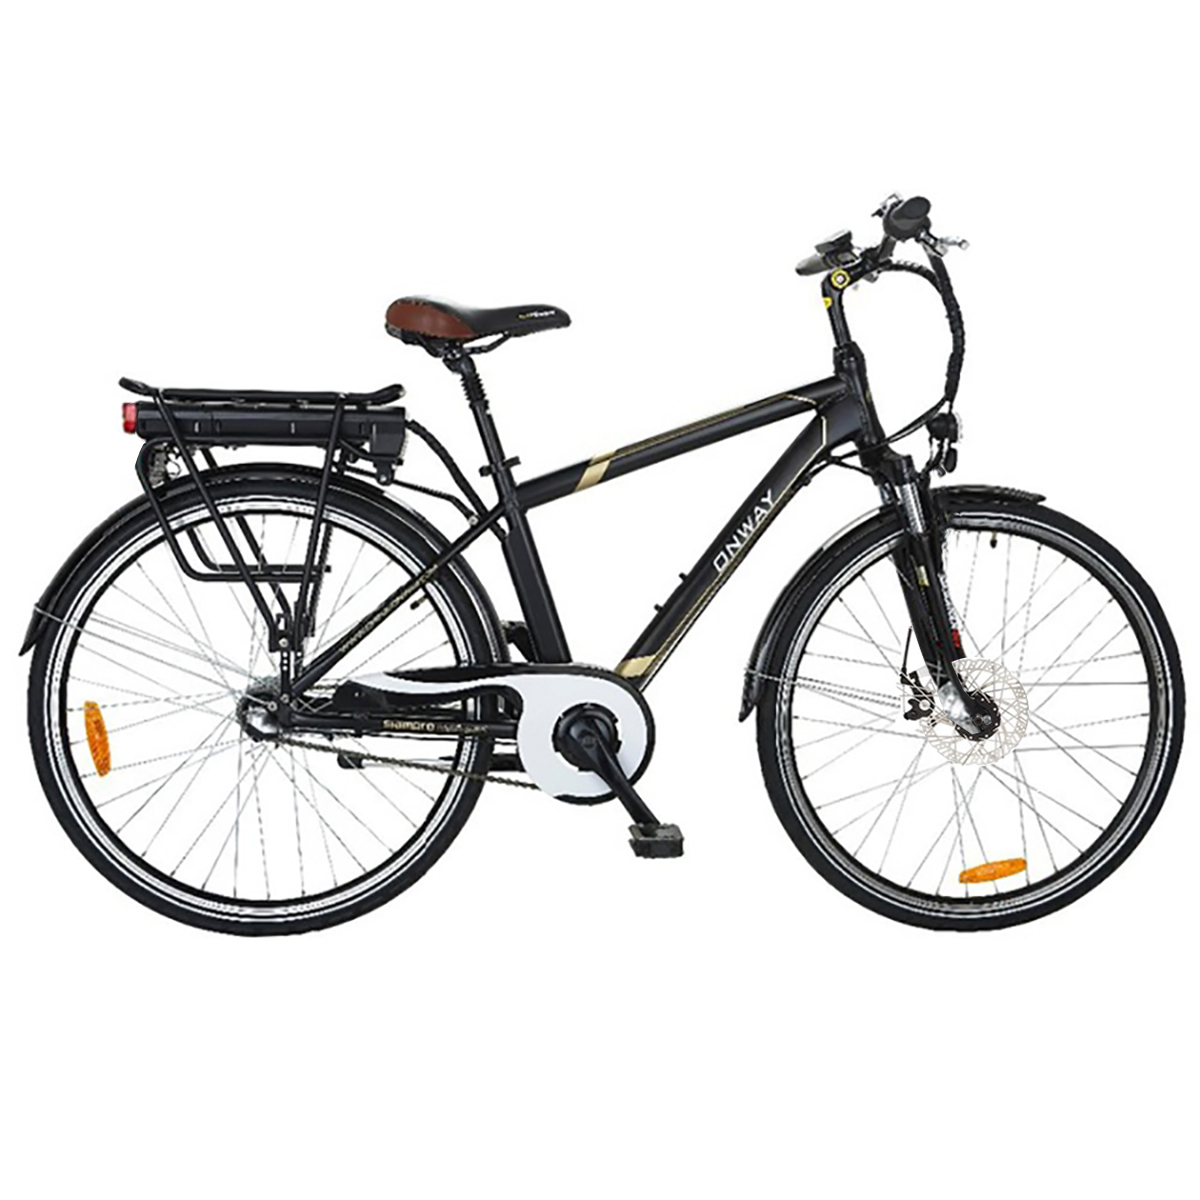 دوچرخه برقی آن وی مدل HF-7001301B36V500w سایز 26